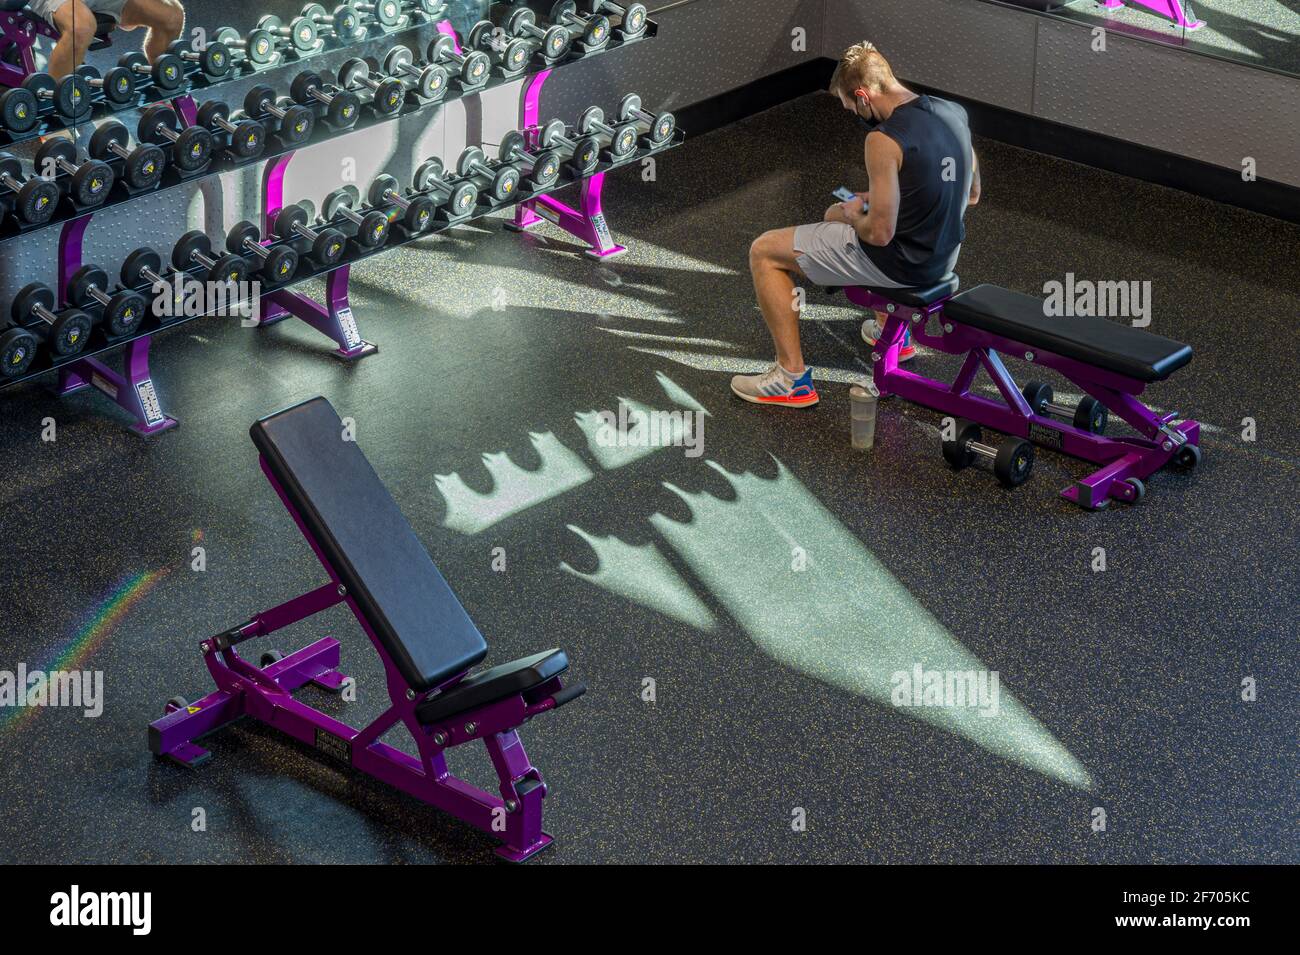 Hombre enviando mensajes de texto en su teléfono celular en medio de un entrenamiento en el gimnasio, Philadelphia, USA Foto de stock